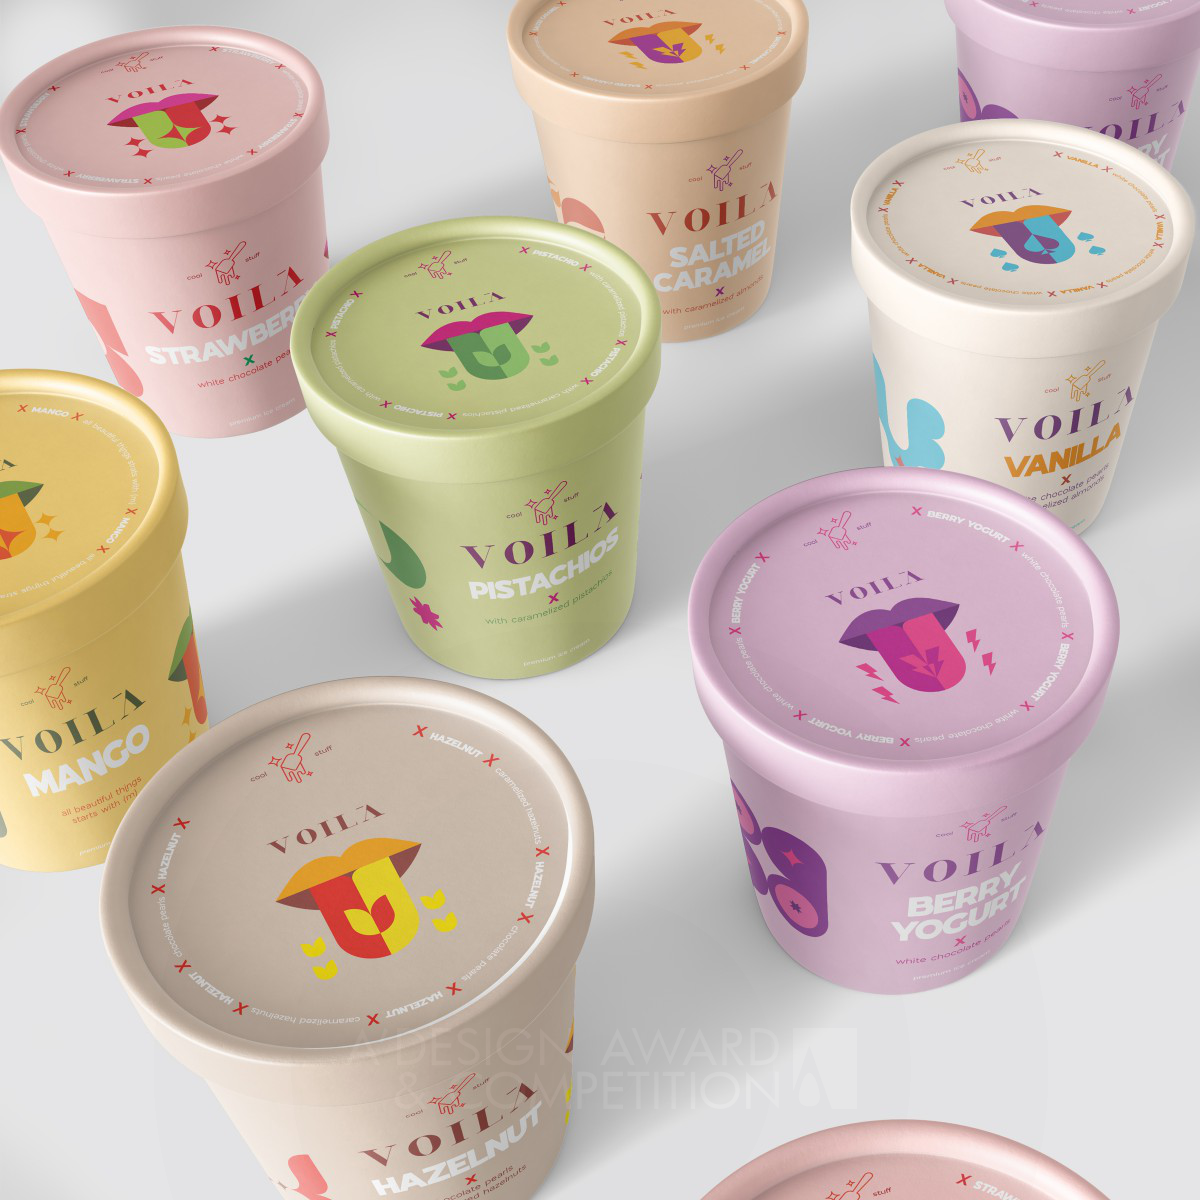 Voila Cool Stuff: Kamal Rizk'in Ödüllü Dondurma Paketleme Tasarımı